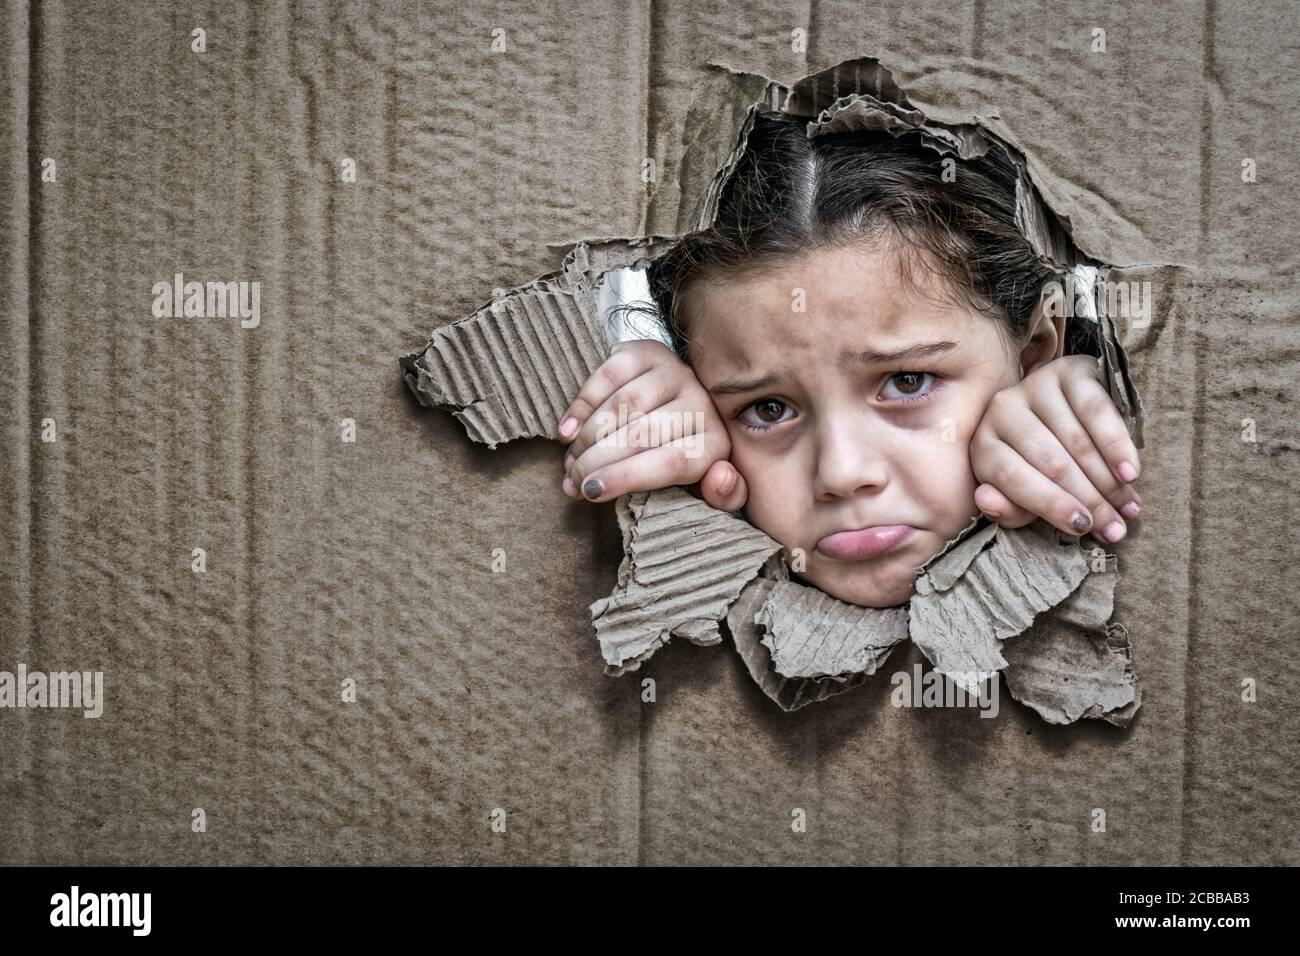 Bambina con un'espressione triste dietro un cartone, guardando attraverso un grande buco nel cartone con le sue mani che stringono il bordo del foro Foto Stock